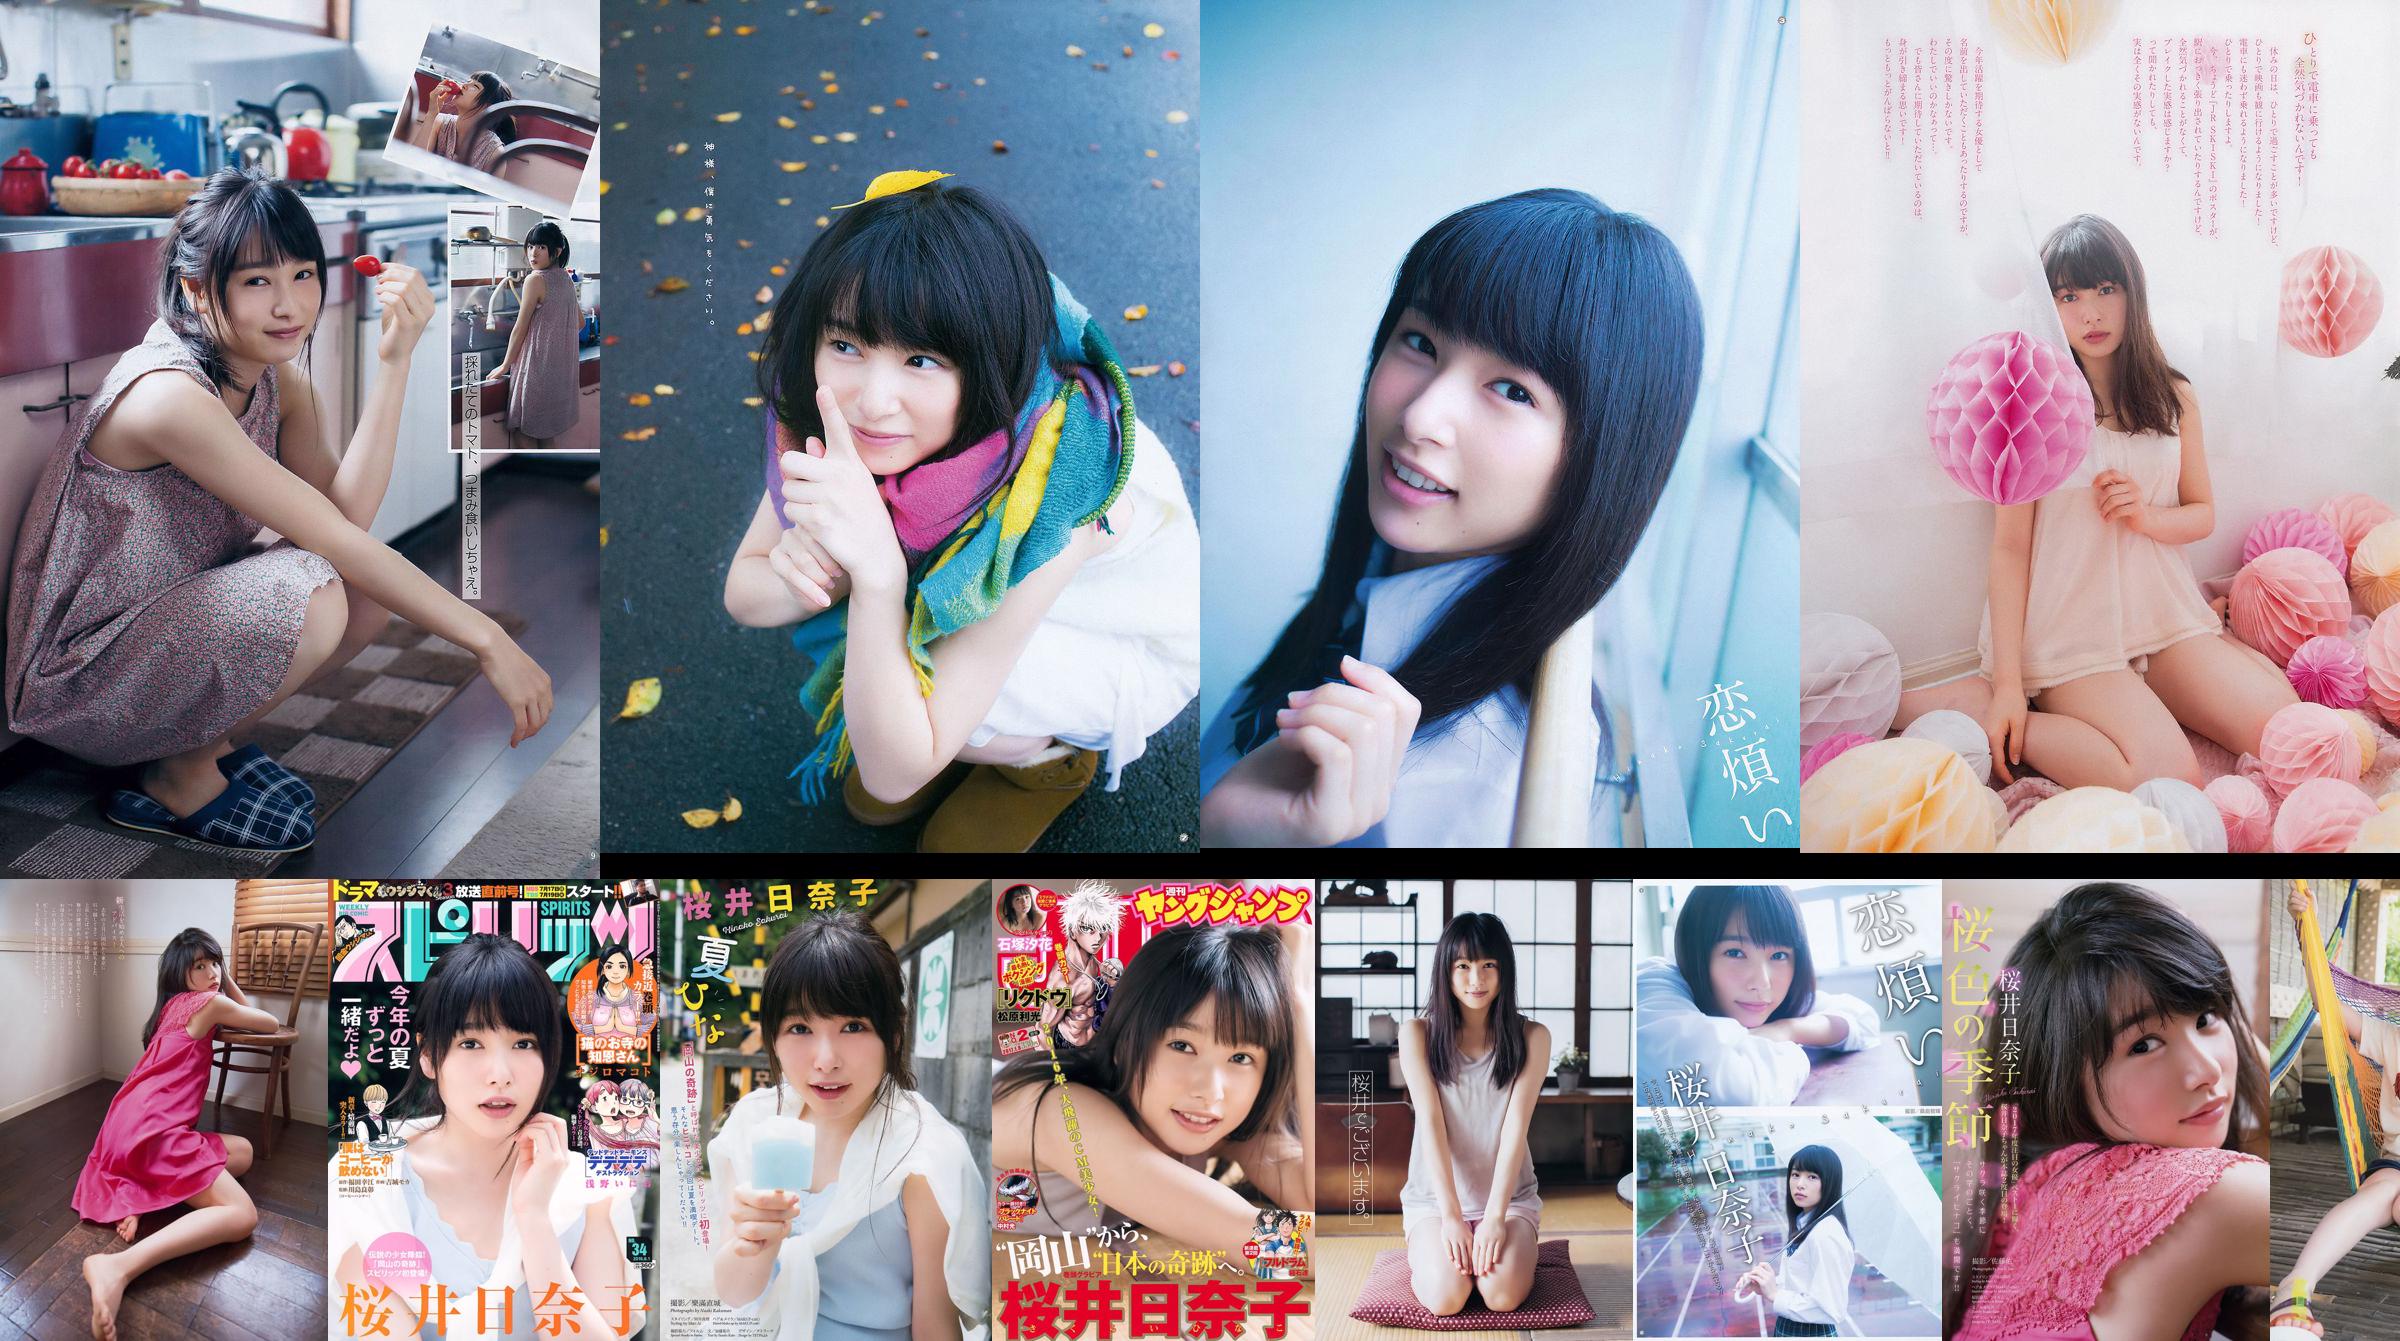 [Young Gangan] Sakurai Hinako 2015 n ° 22 Magazine photo No.9aae9a Page 1